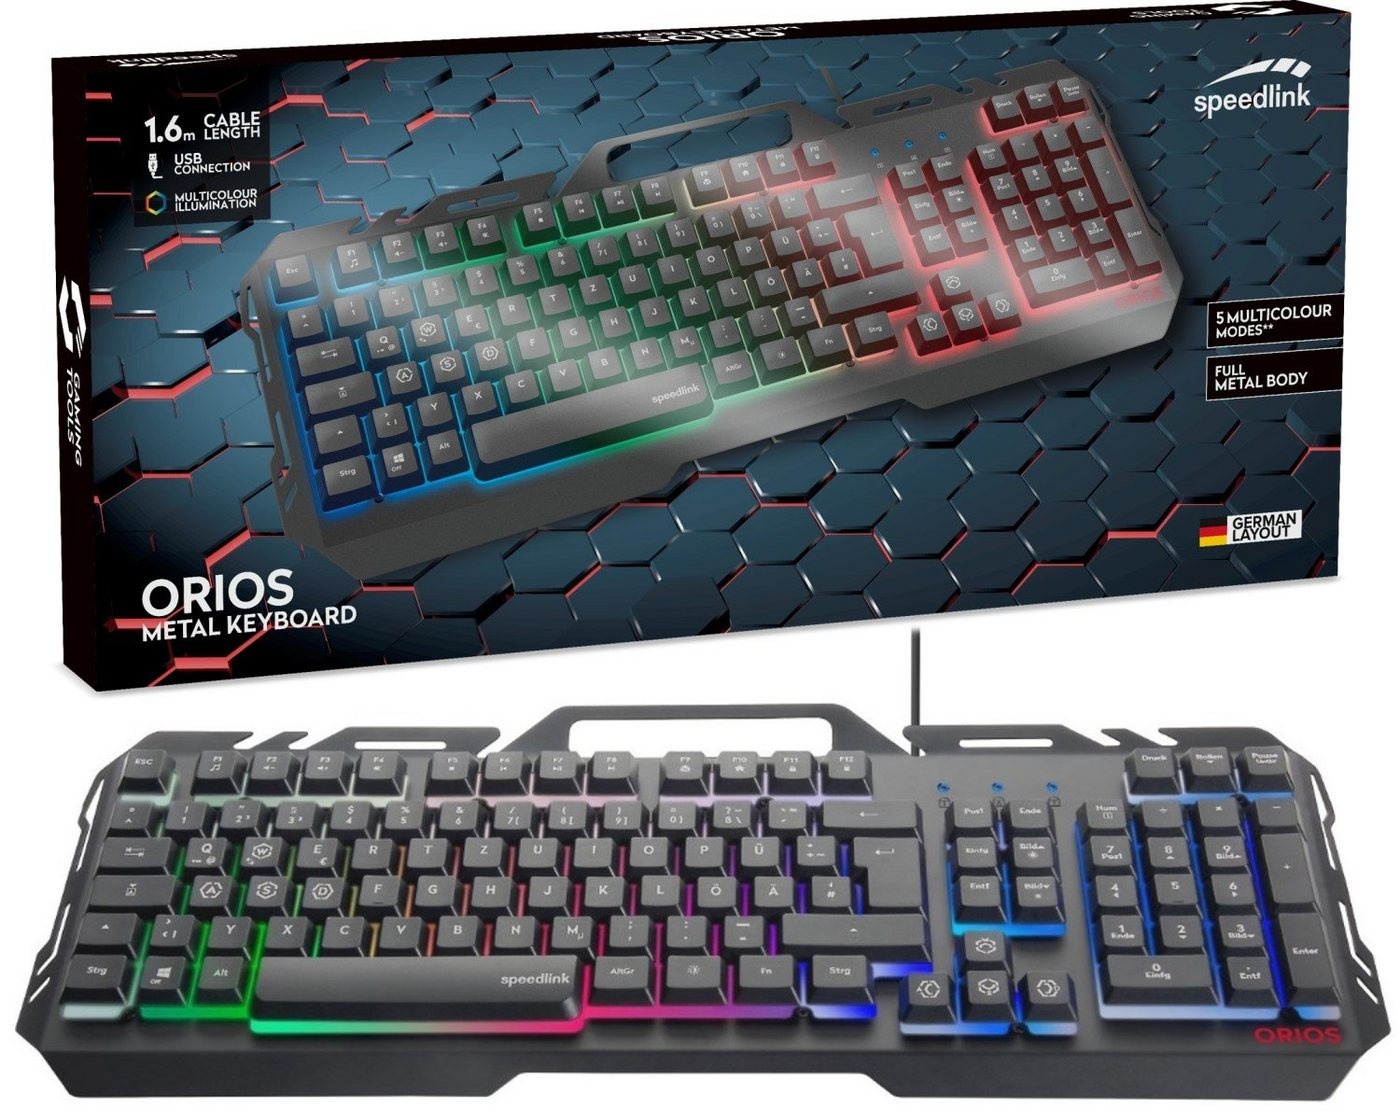 Speedlink ORIOS Metall USB Gaming Tastatur PC-Tastatur (RGB Beleuchtung, Gamer Keyboard, Smartphone-Halterung, Anti-Ghosting) schwarz